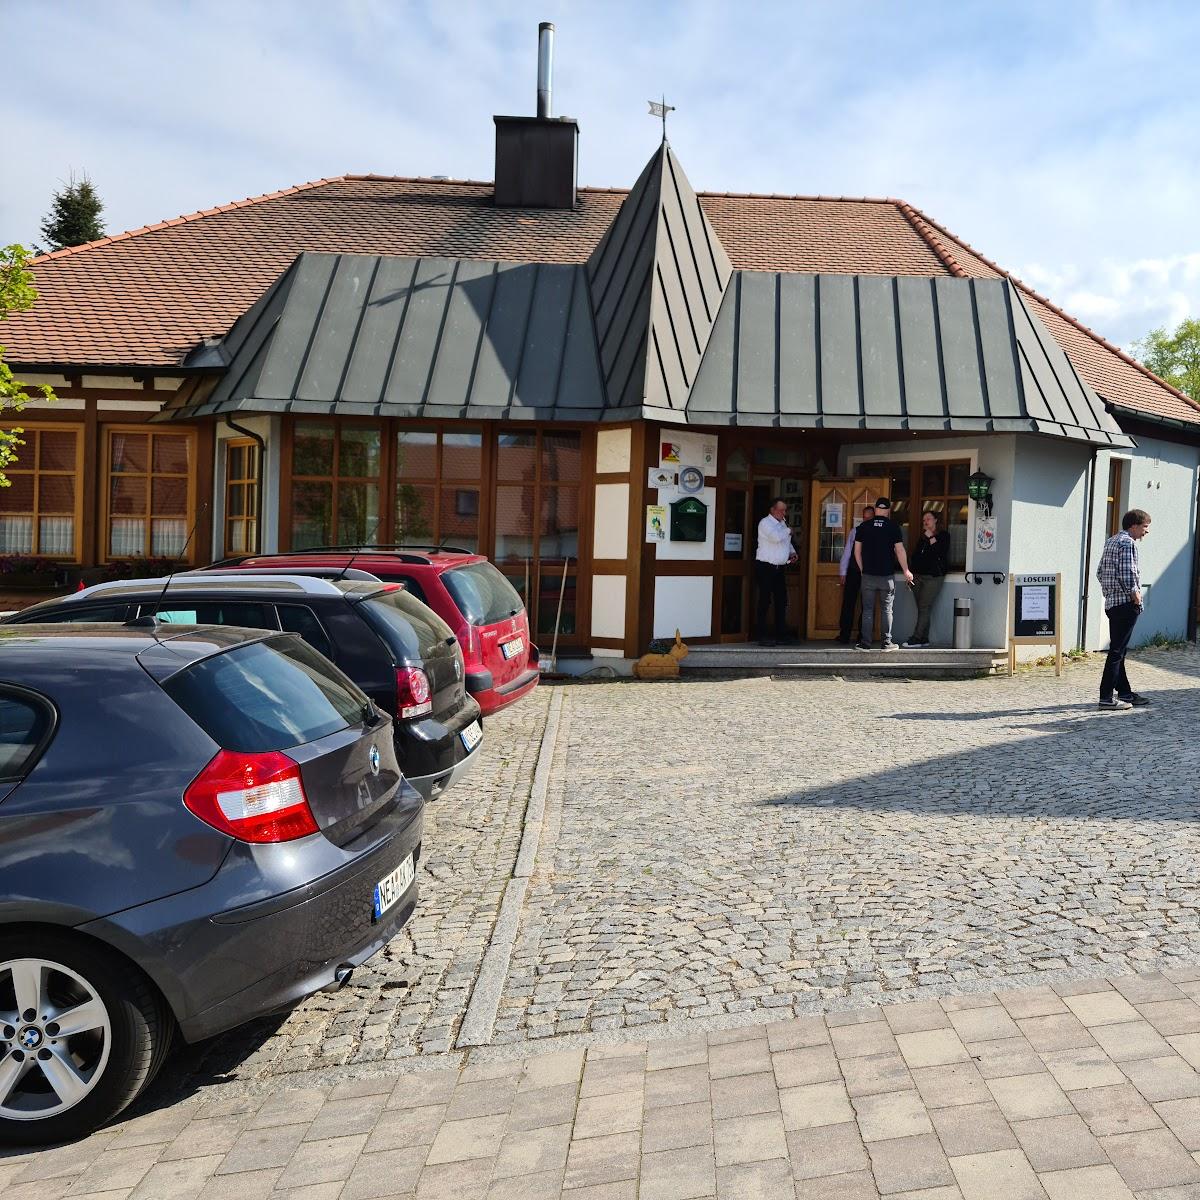 Restaurant "Landgasthof Brennereistuben" in Wilhelmsdorf